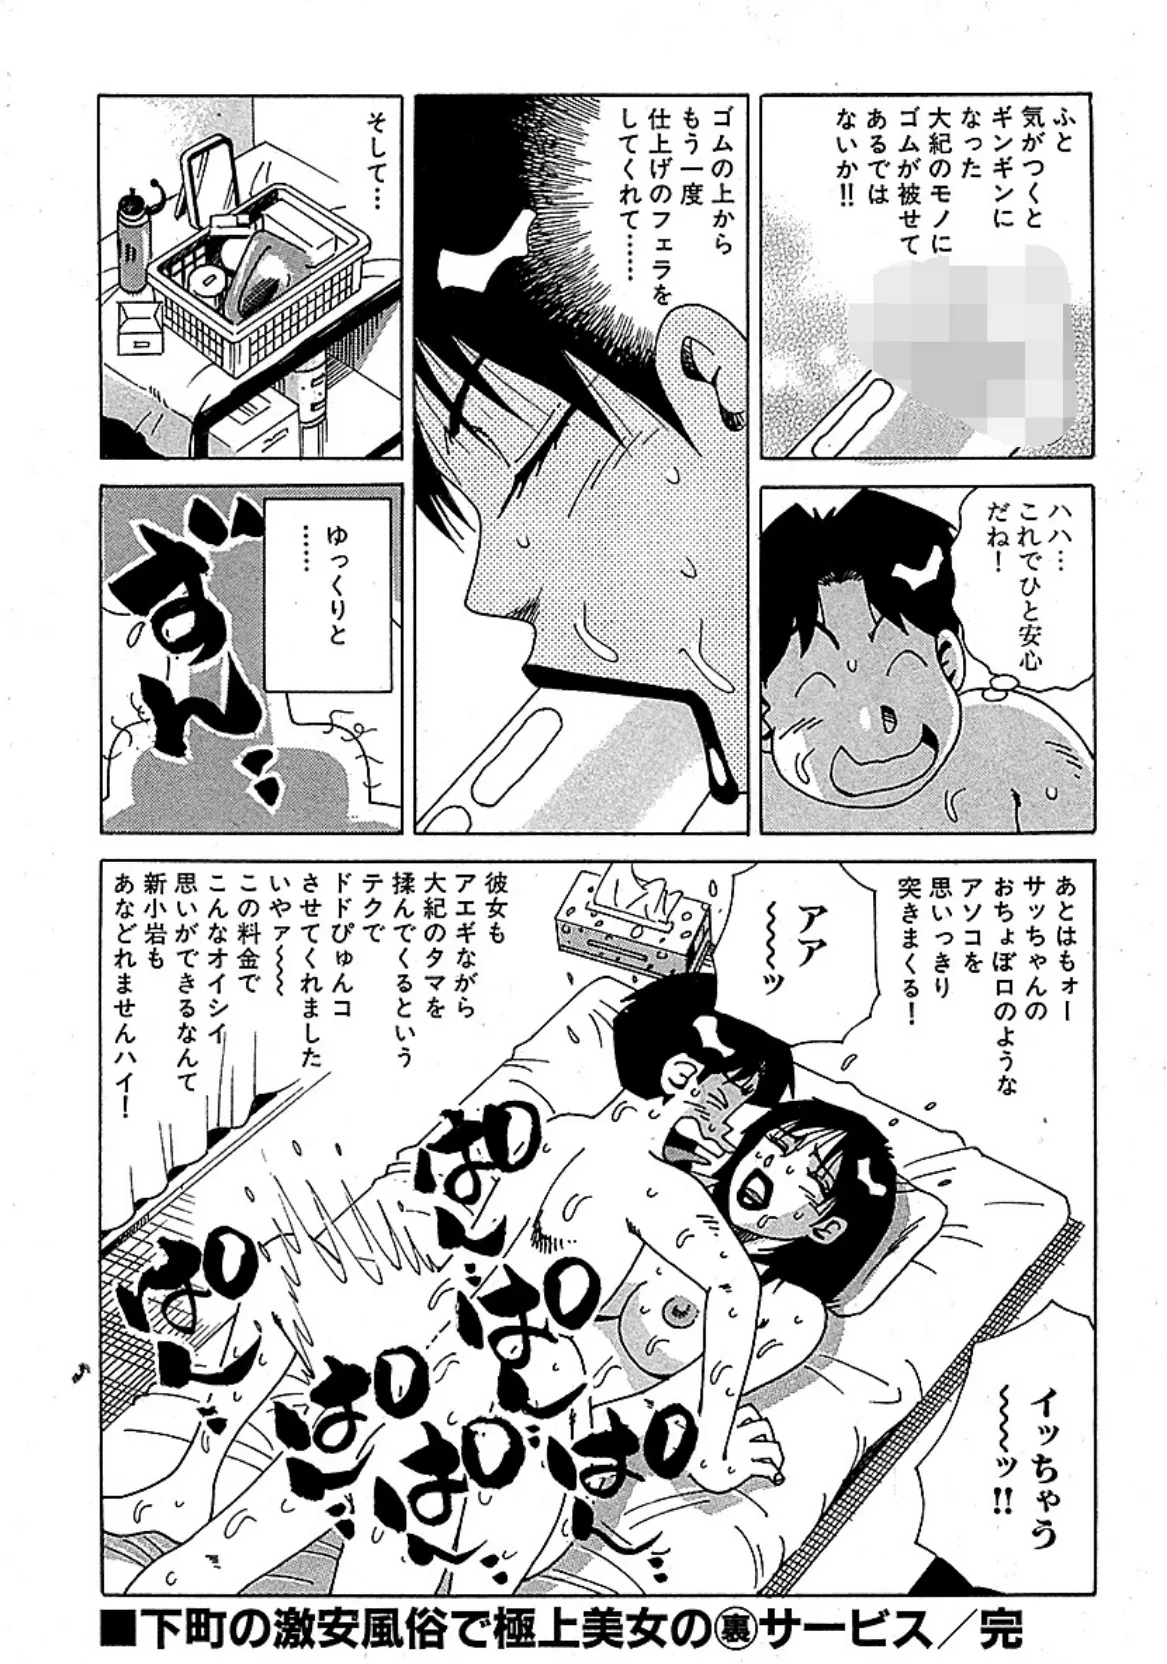 山崎大紀の本当にあったHな話 三行広告スペシャル 分冊版 5 8ページ